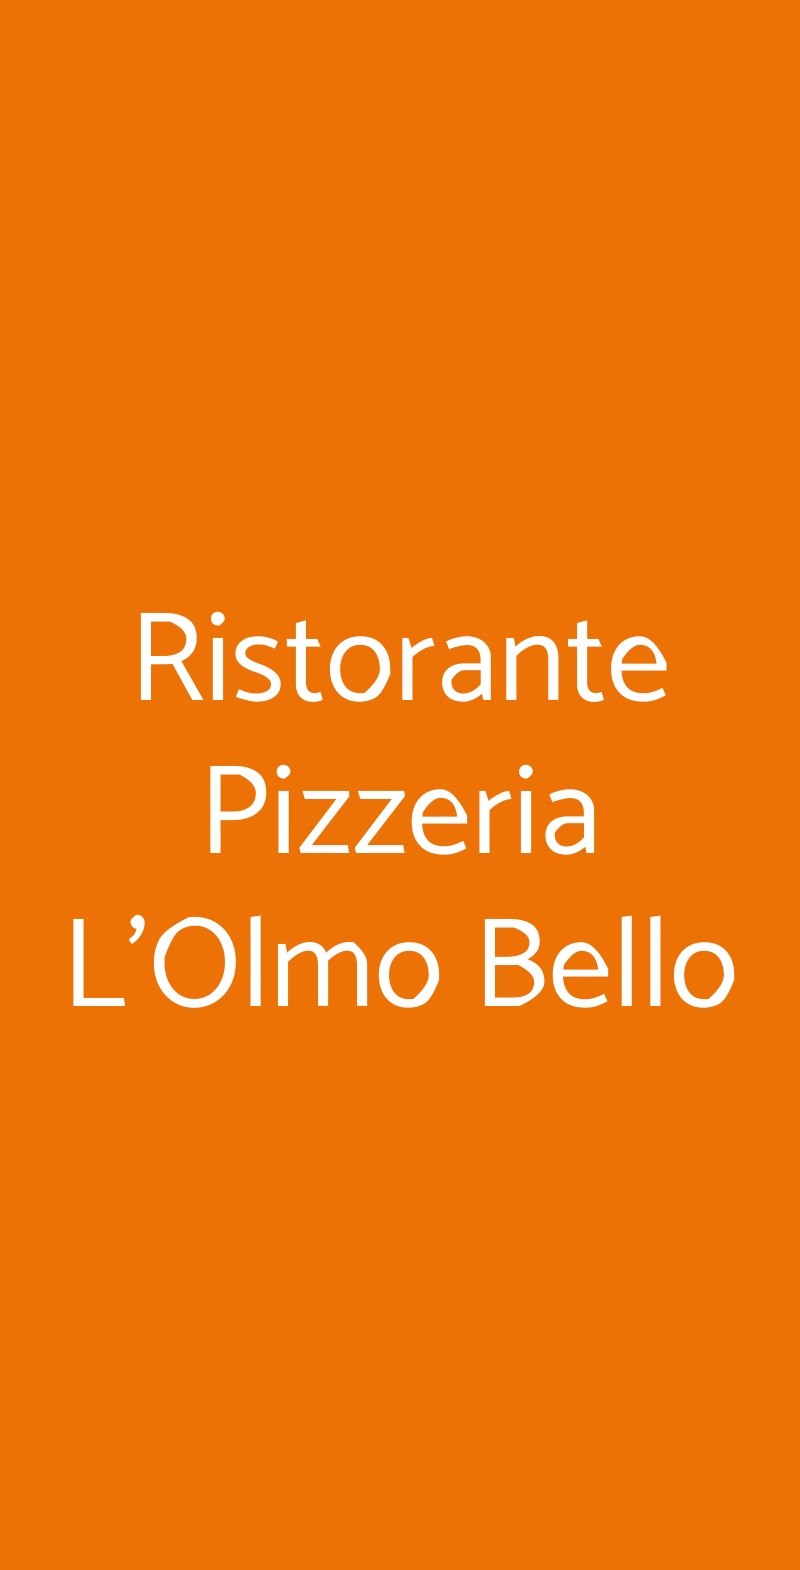 Ristorante Pizzeria L'Olmo Bello Alberobello menù 1 pagina